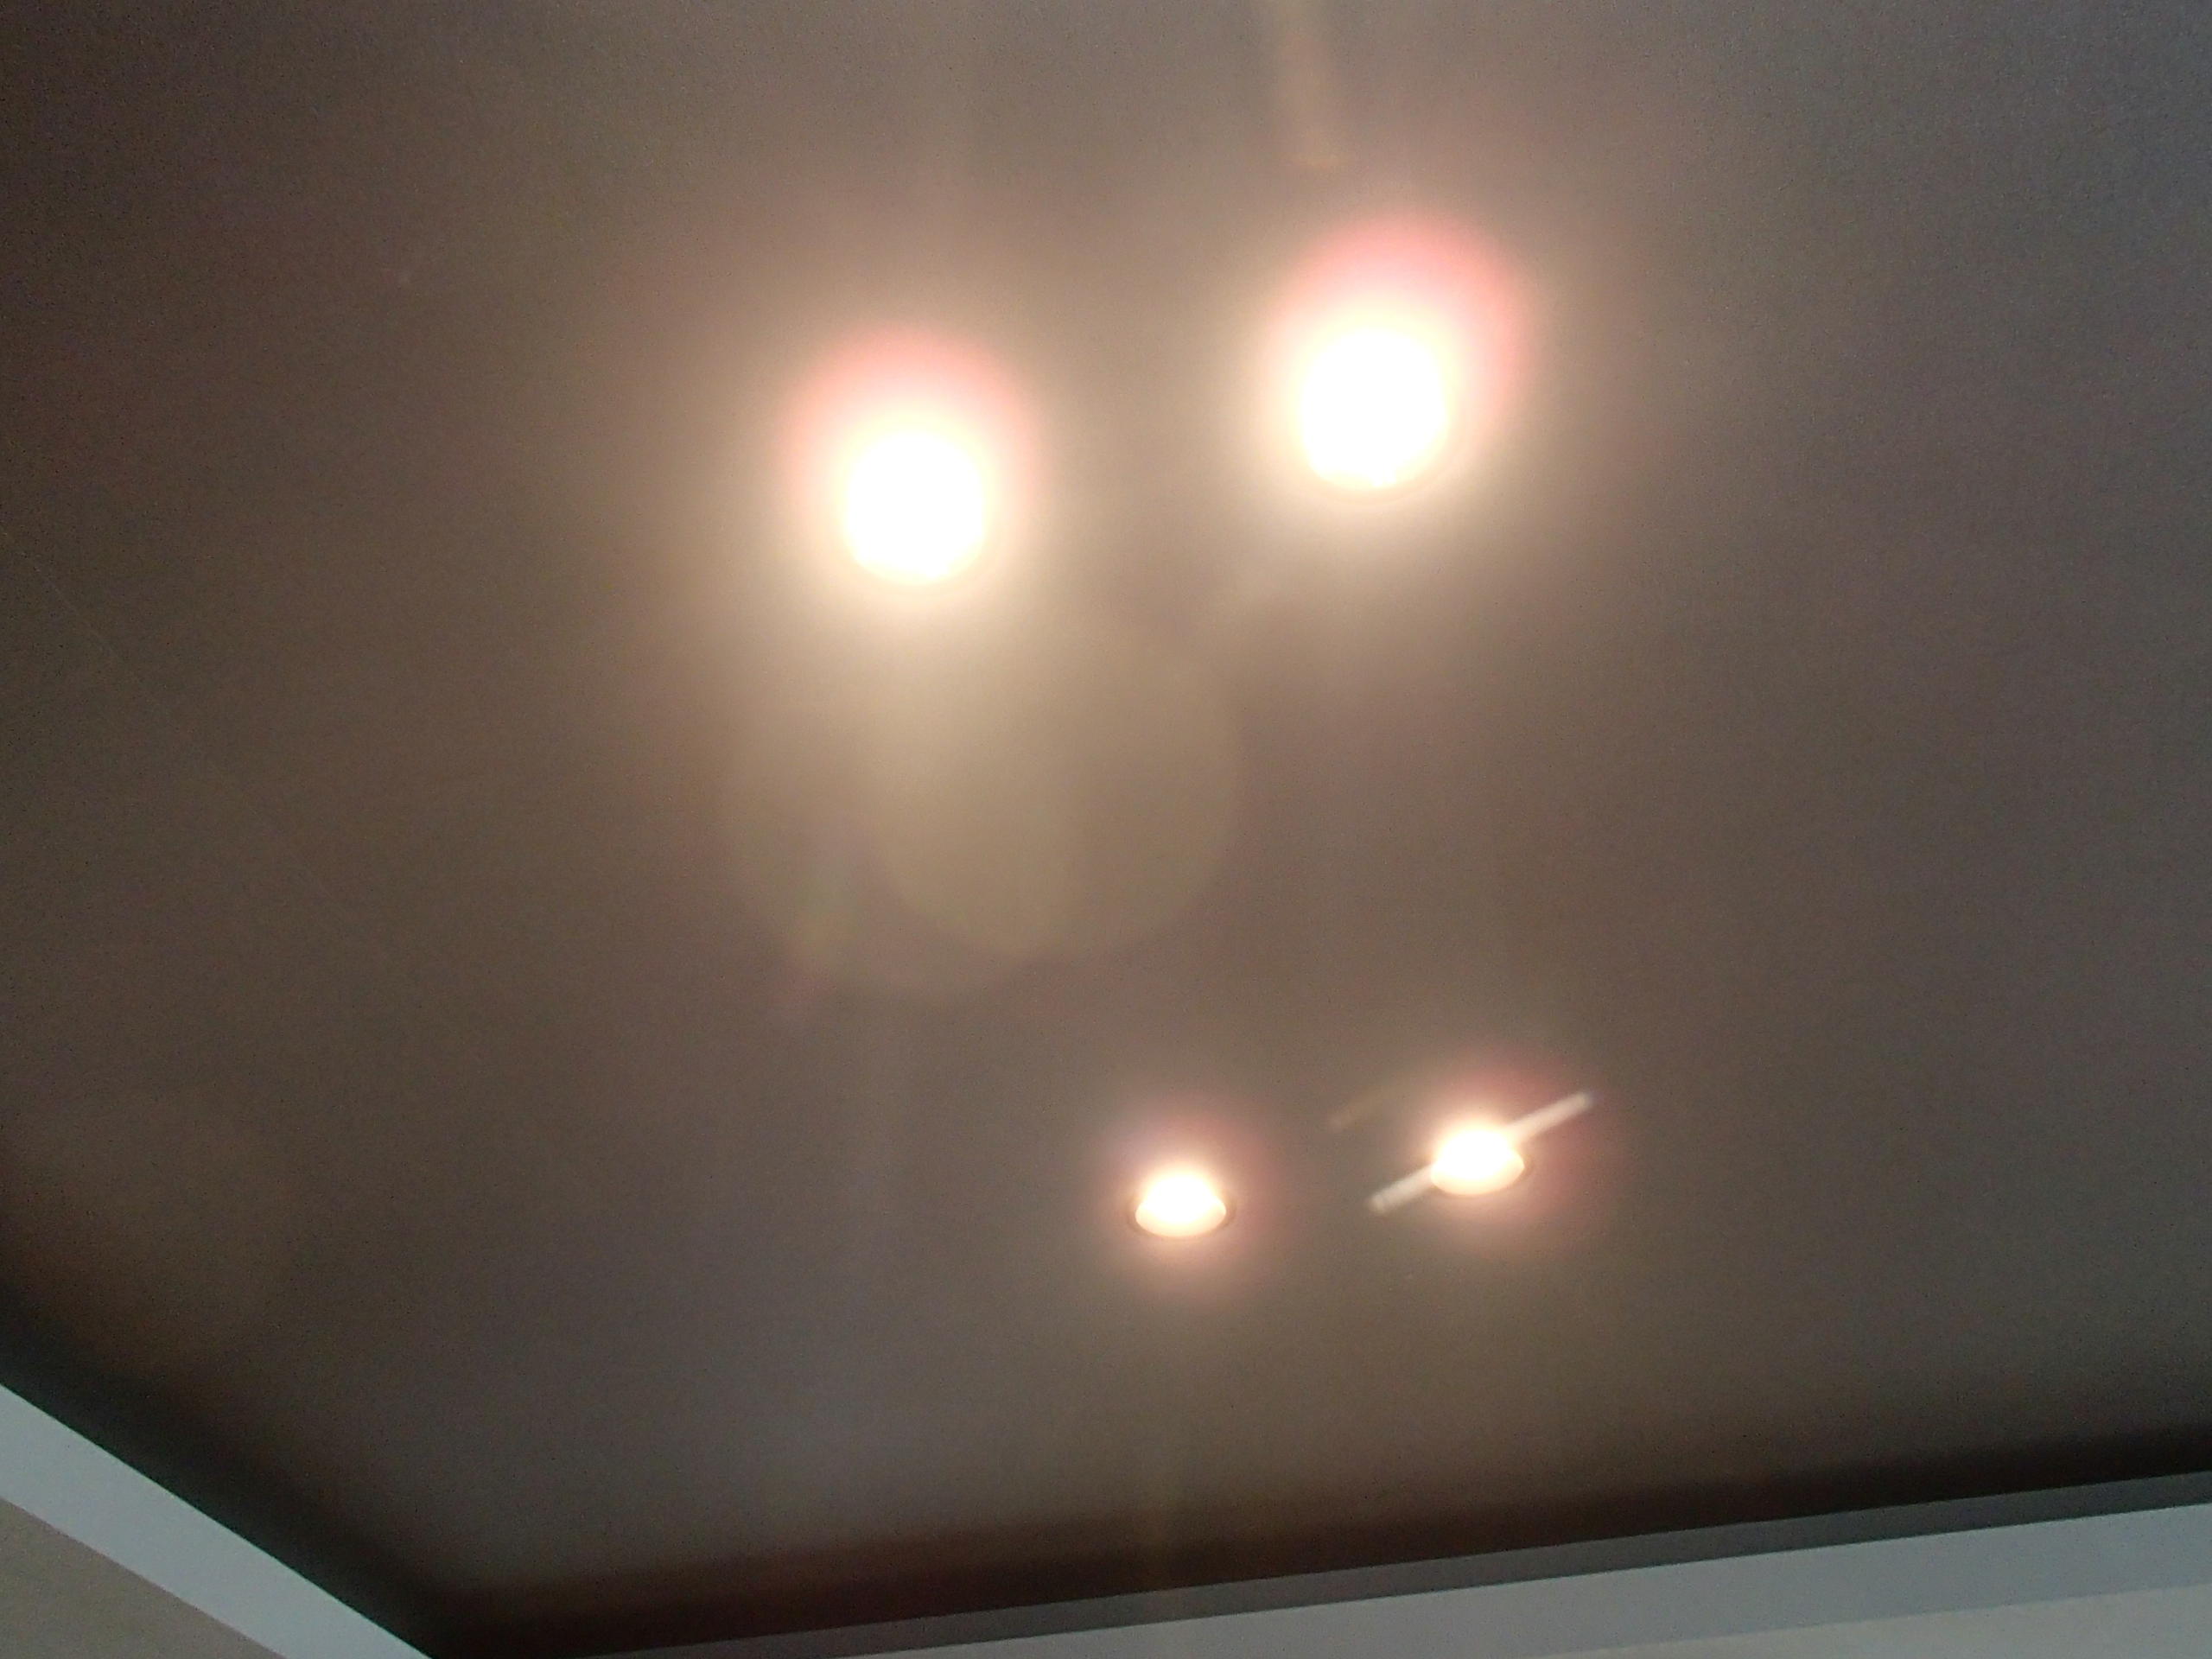 愛知県名古屋市 戸建て住宅リビングダイニングLEDダウンライト照明器具取替え交換工事画像